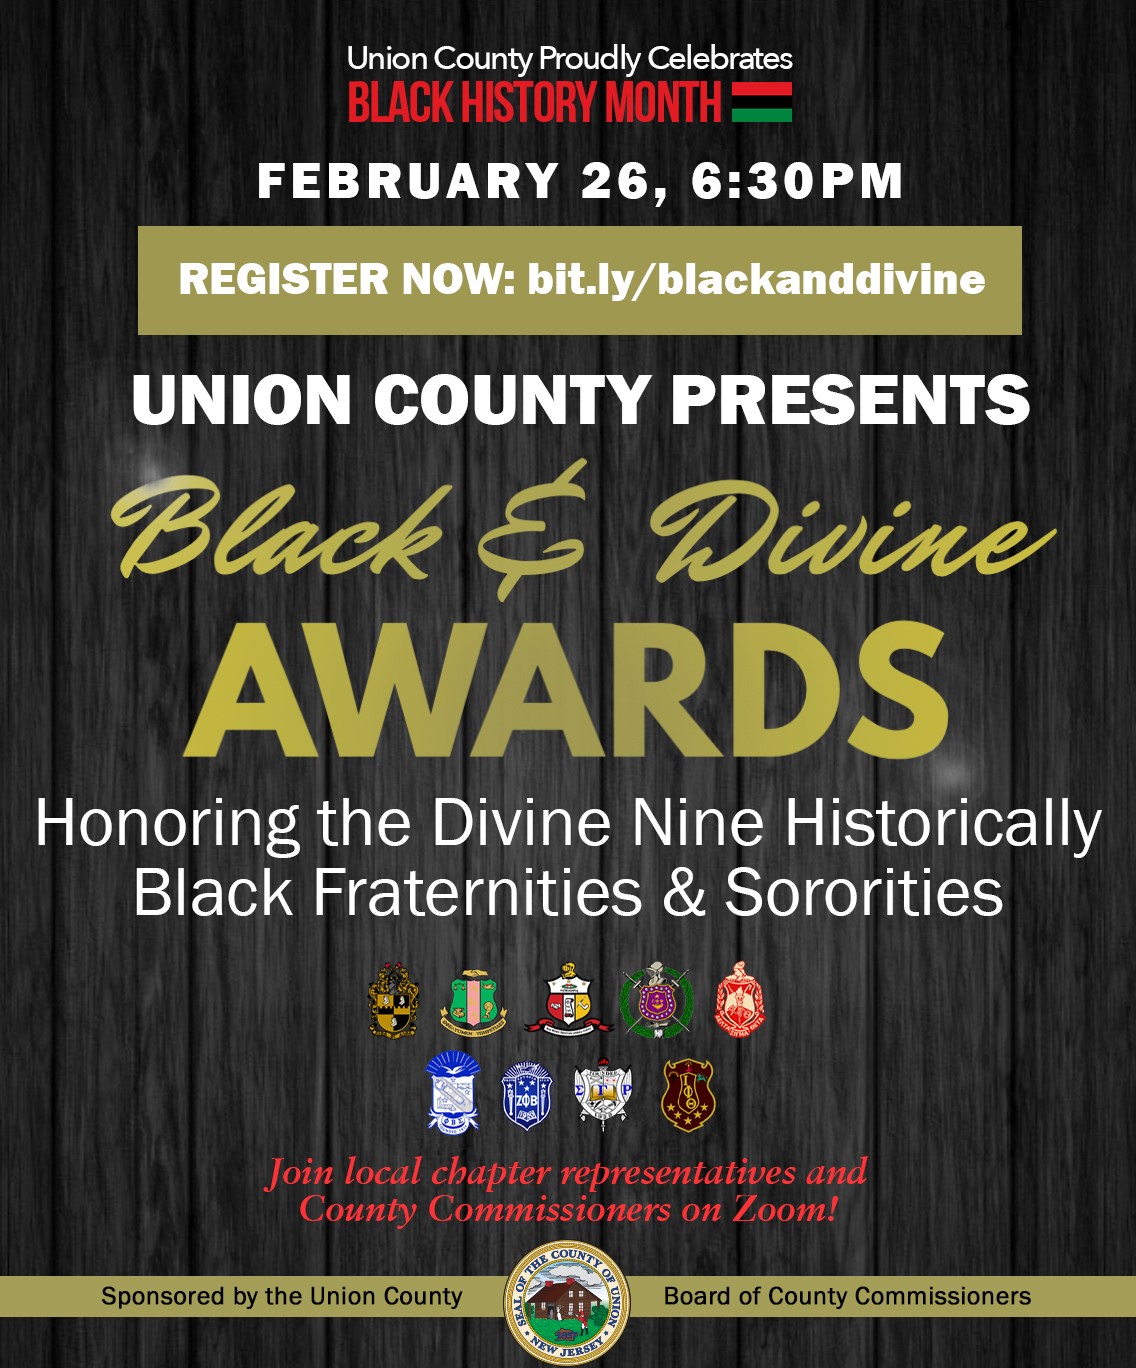 black and divine awards flyer